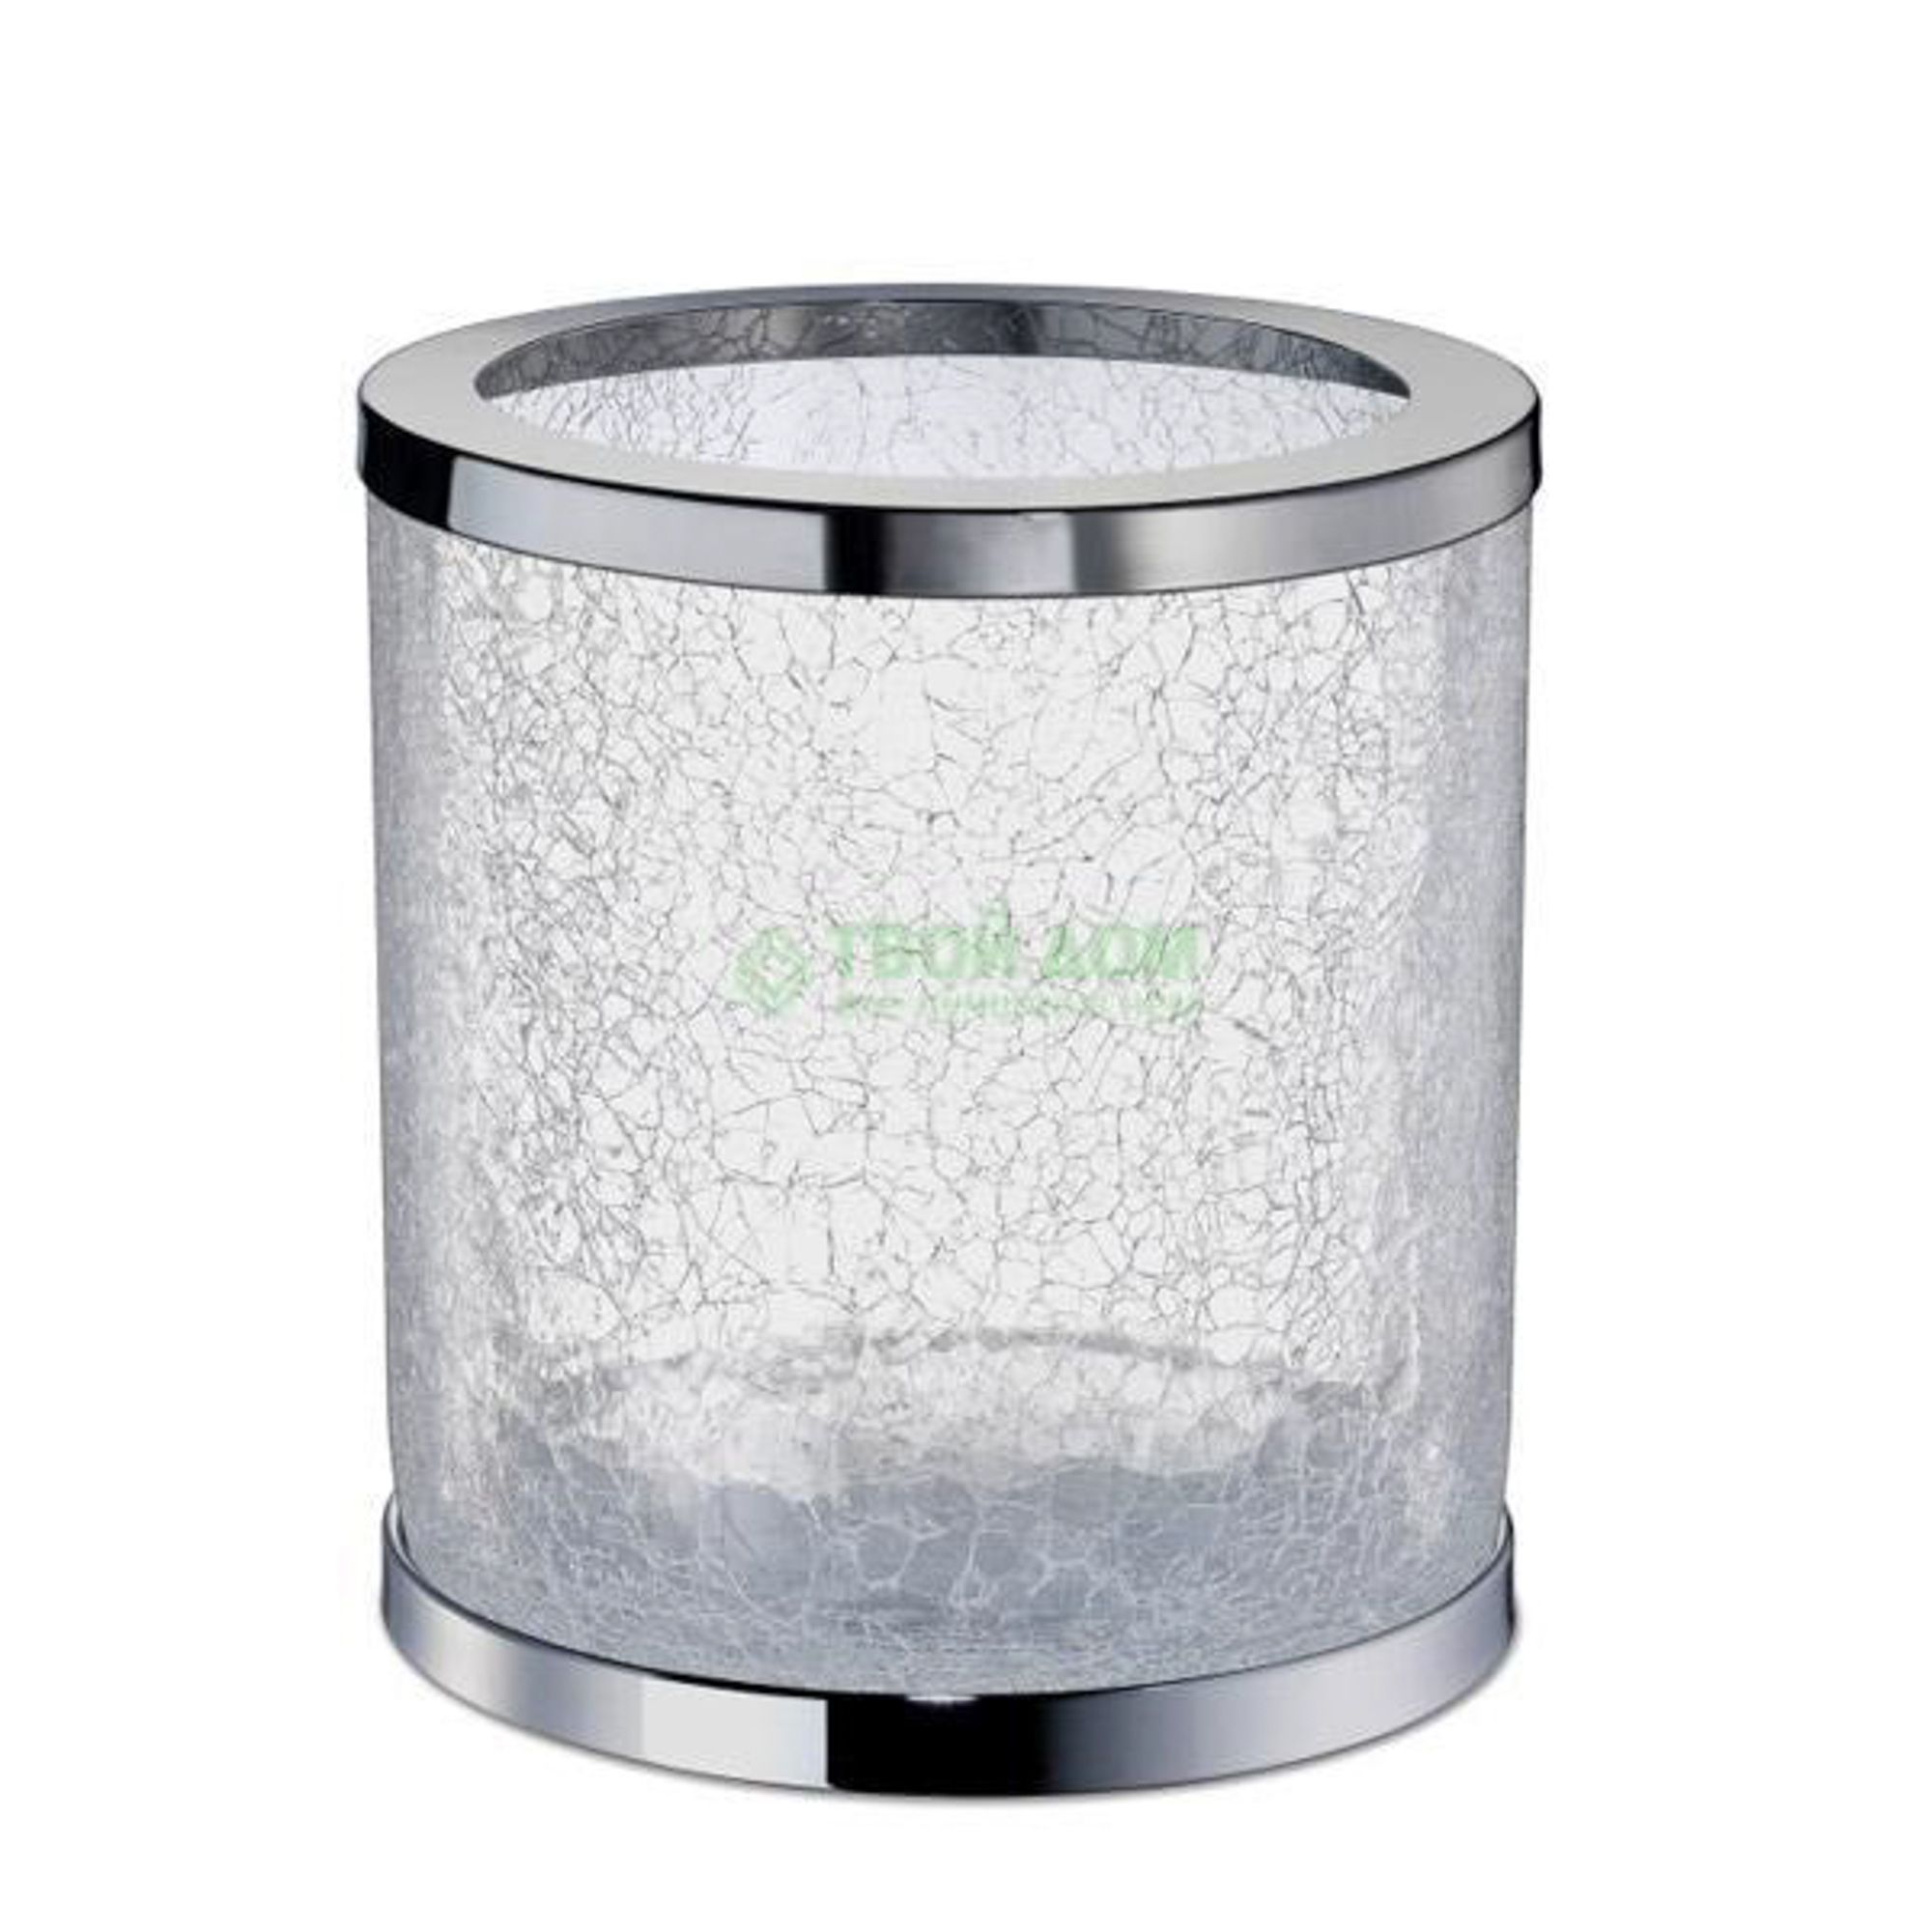 Ведро Windisch Ведро мусорное никель стекло (89164NI)